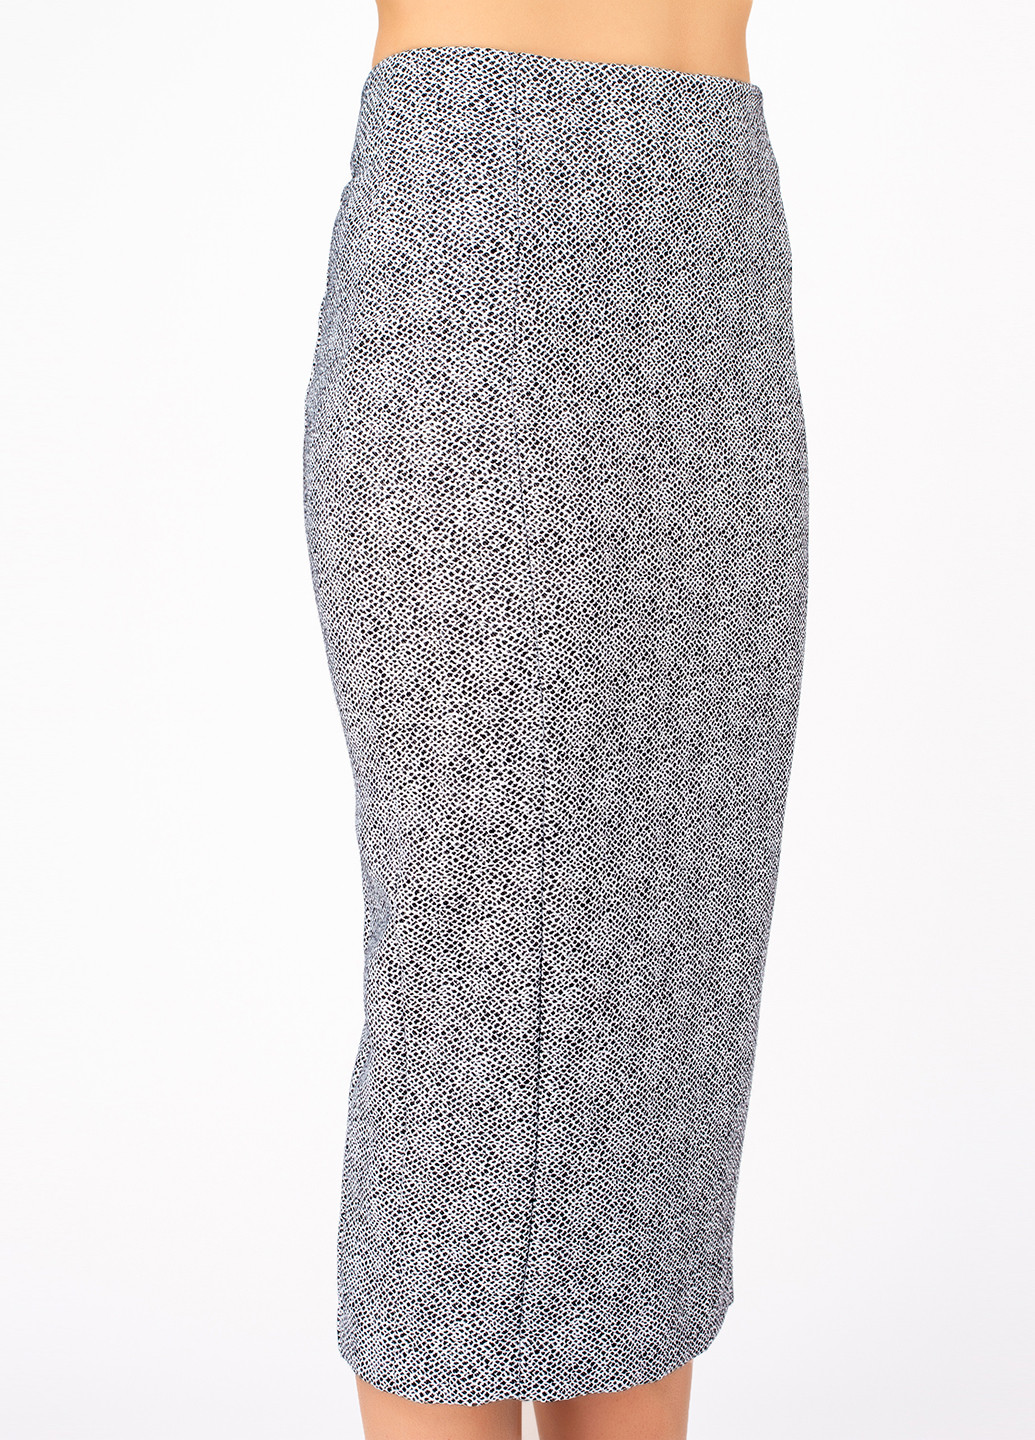 Костюм (жакет, юбка) BGL Комплект (жакет и юбка) юбочный анималистичный серый деловой хлопок